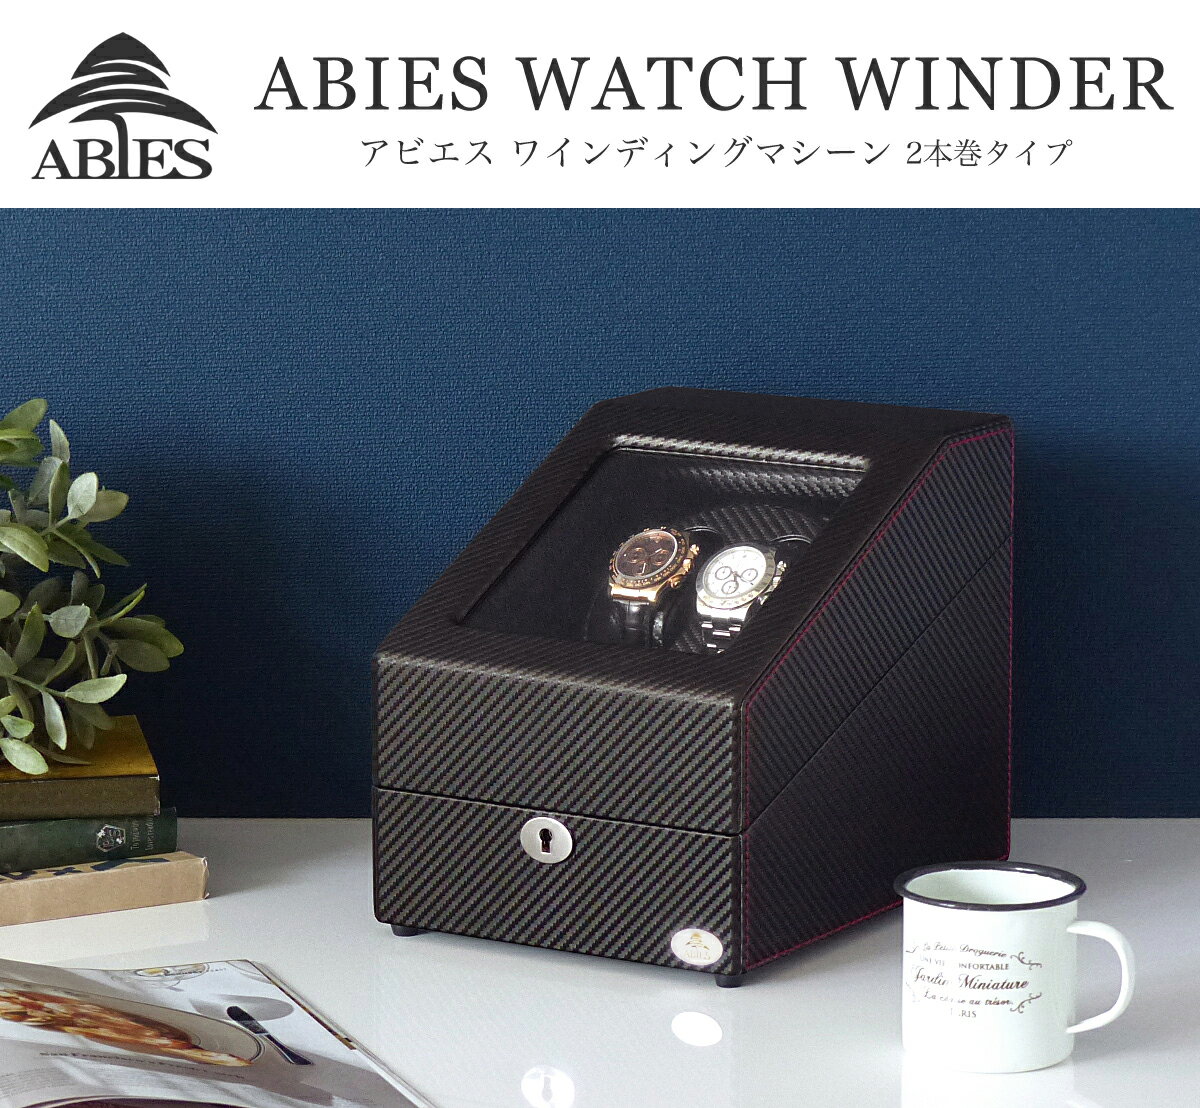 ワインディングマシーン 2本巻 カーボン調 Abies(アビエス) ワインディングマシン 2連 ウォッチワインダー 2本 4本 時計 腕時計 自動巻き ワインダー ウォッチケース 時計ケース ギフト プレゼント メンズ レディース ケース 父の日 電池式